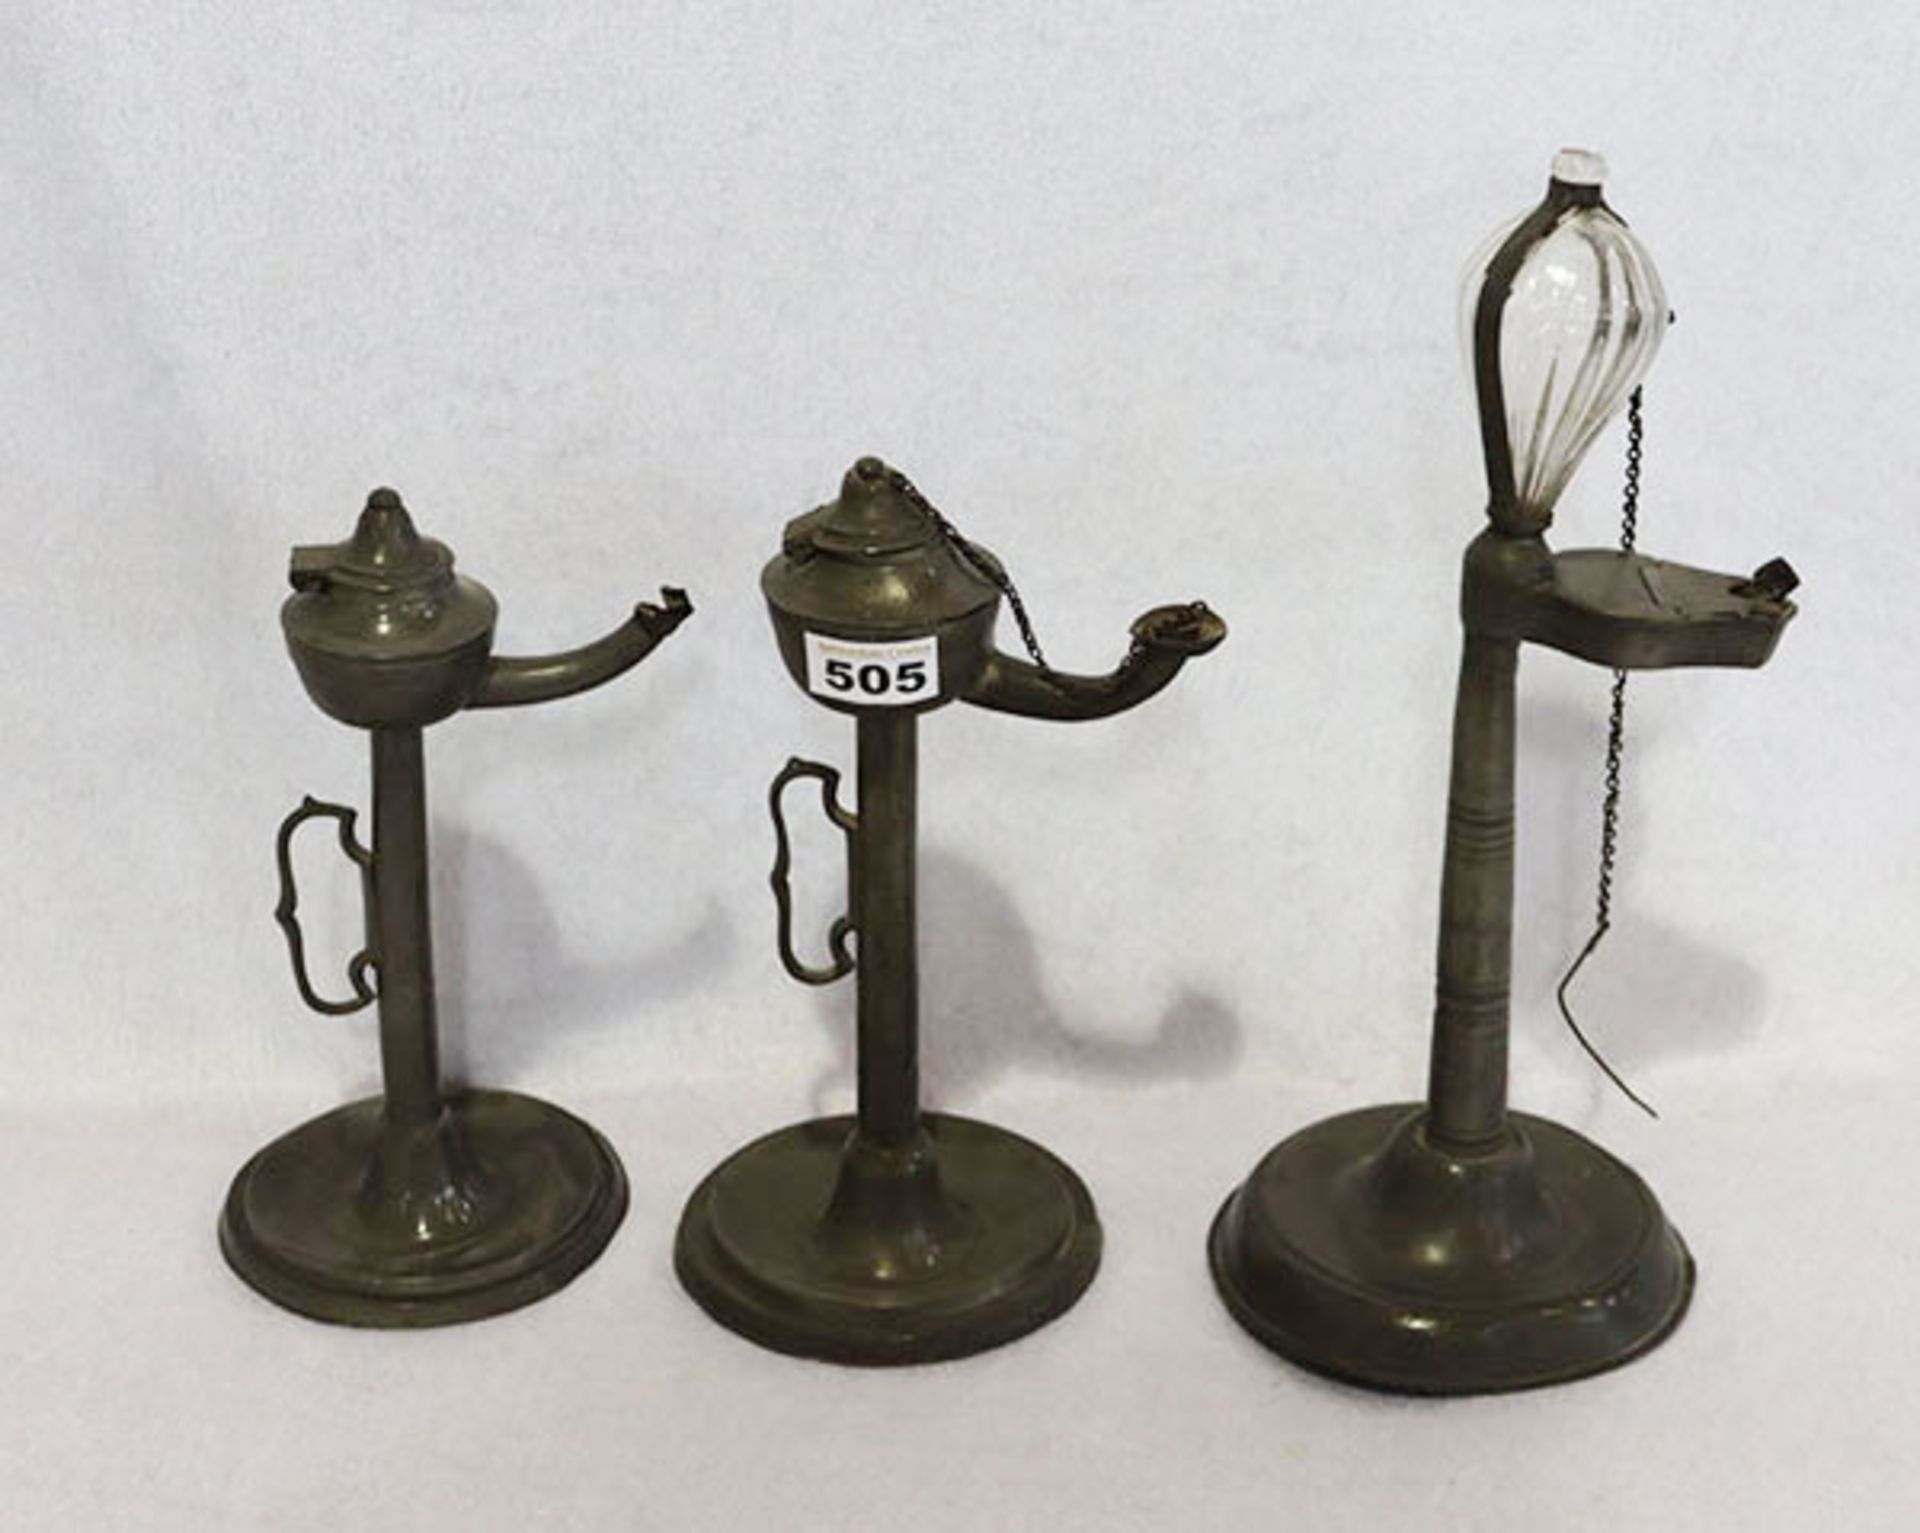 3 Zinn-Öllampen, teils verbeult, H 27/36 cm, Alters- und Gebrauchsspuren, teils beschädigt